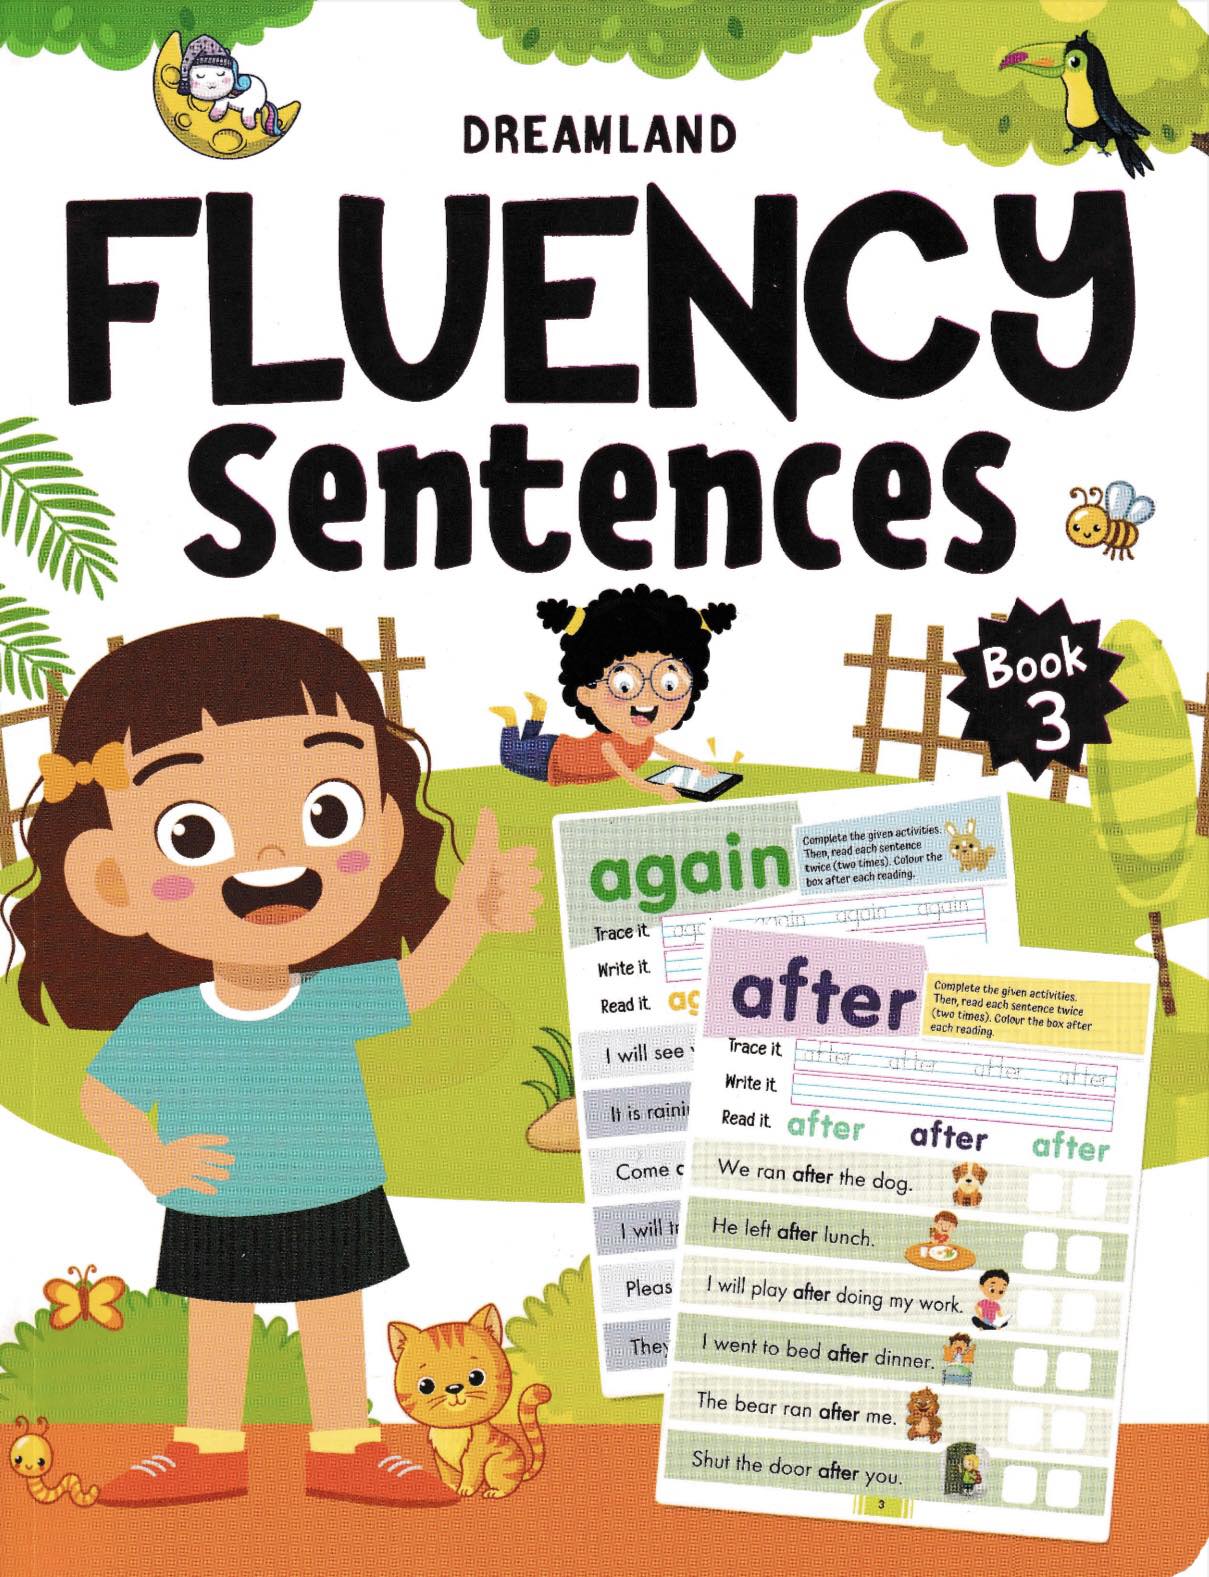 Fluency Sentences Book 1 to 4